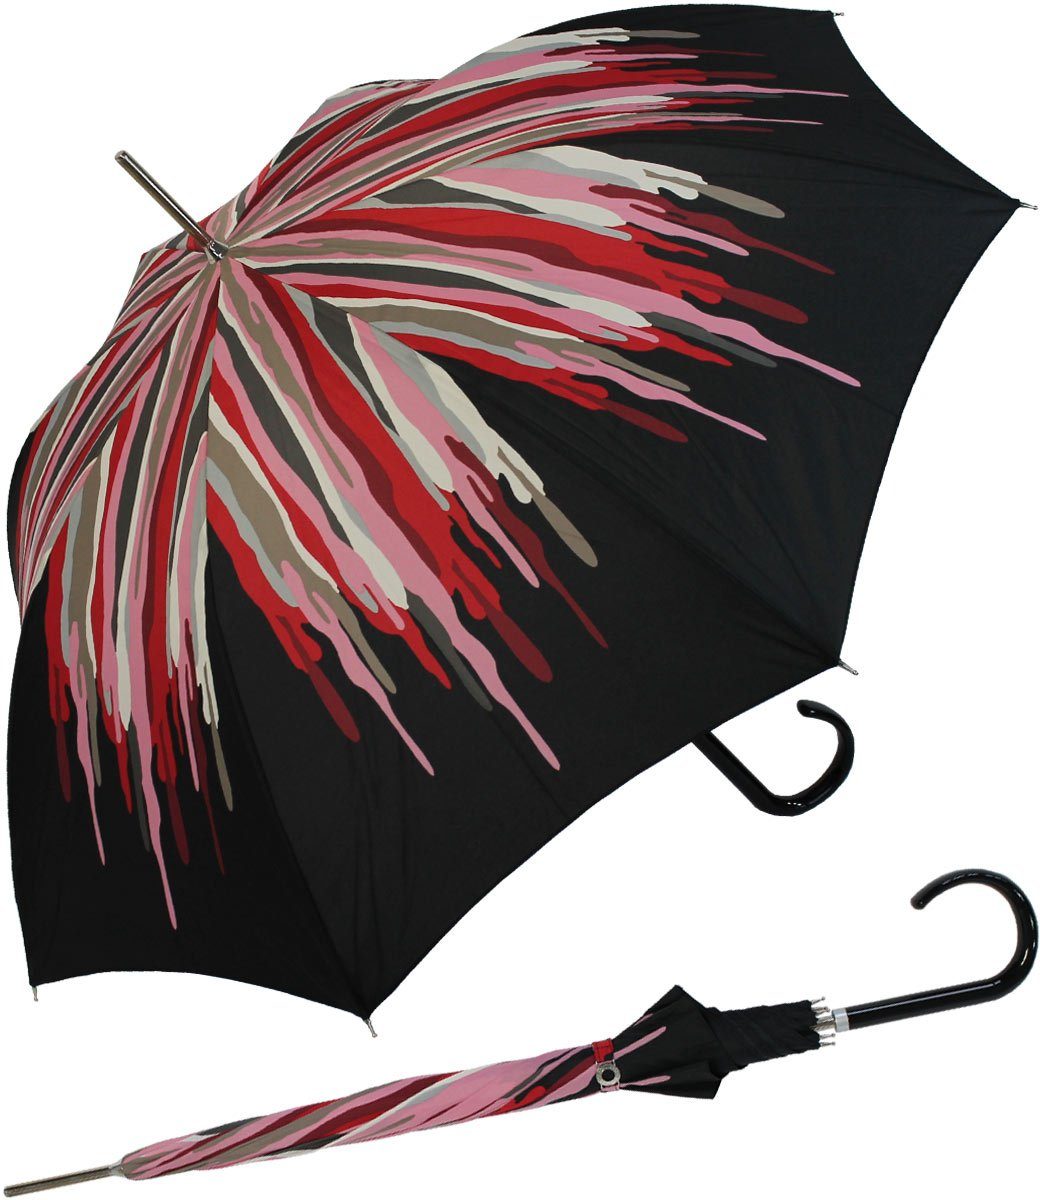 Auftritt für Schirm Langregenschirm den Damenschirm besondere Auf-Automatik, großen extravagant doppler® bedruckter der rot